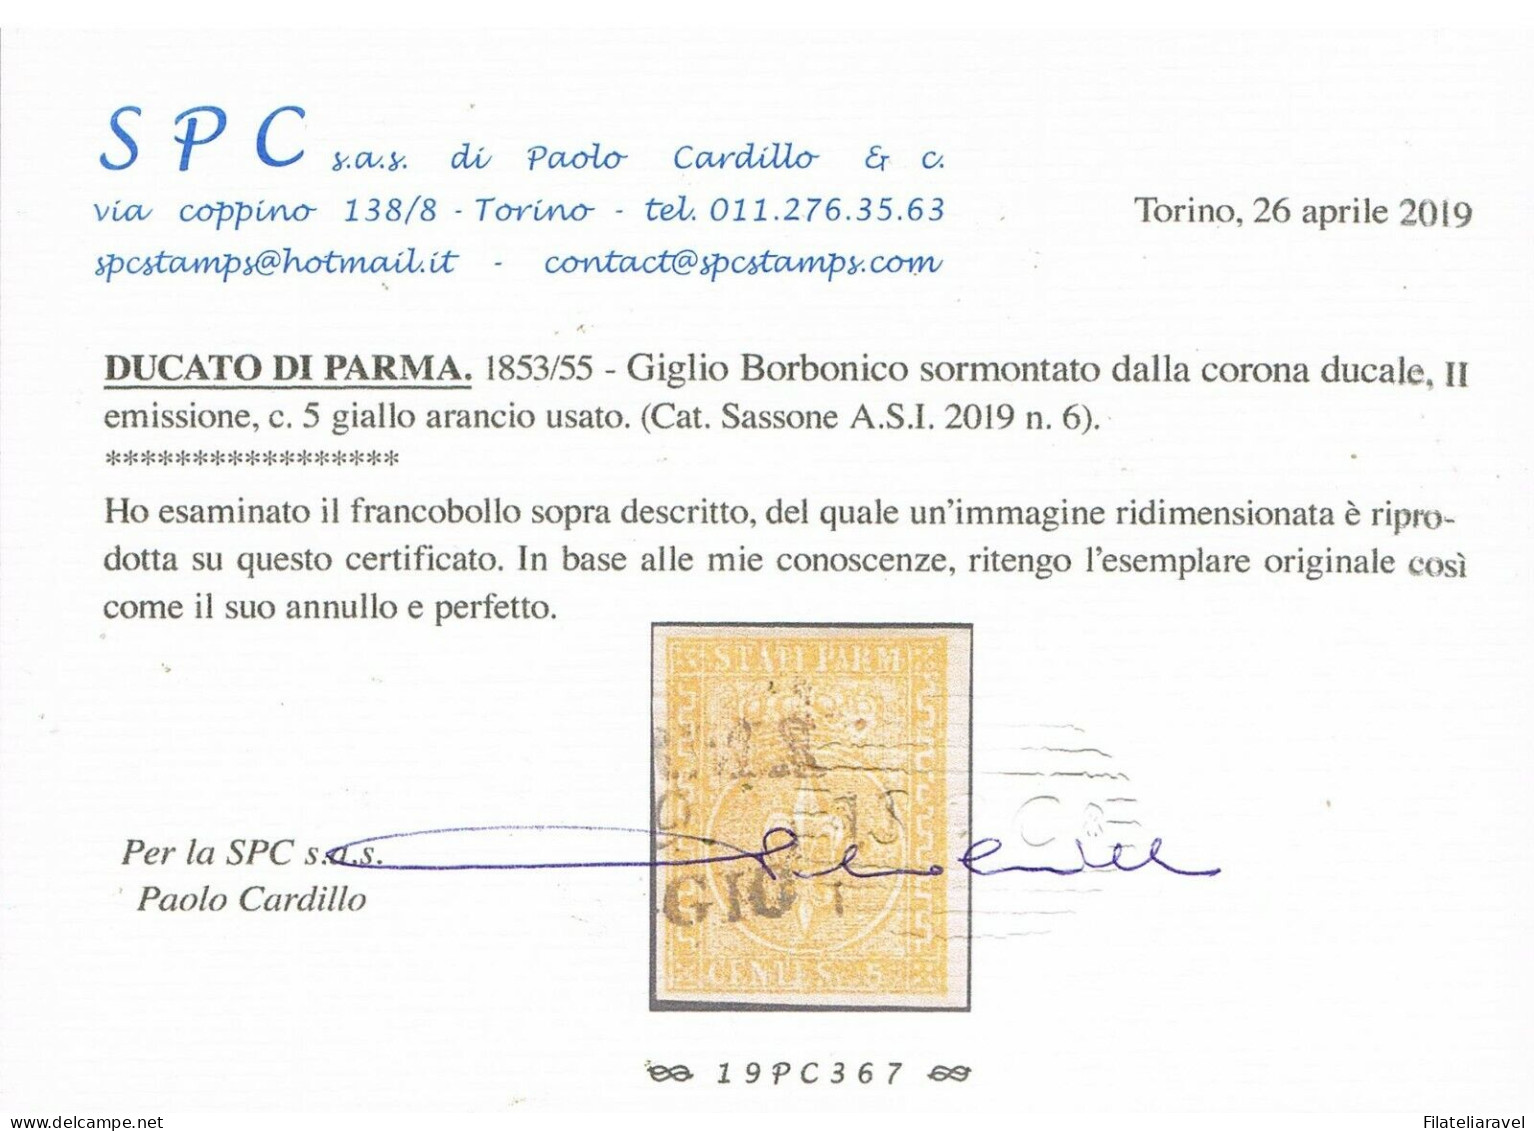 Us 1853/55 Parma- 5 Centesimi Giallo Arancio Bordo Foglio (6) Splendido, Usato, Cert. P.Cardillo - Parma